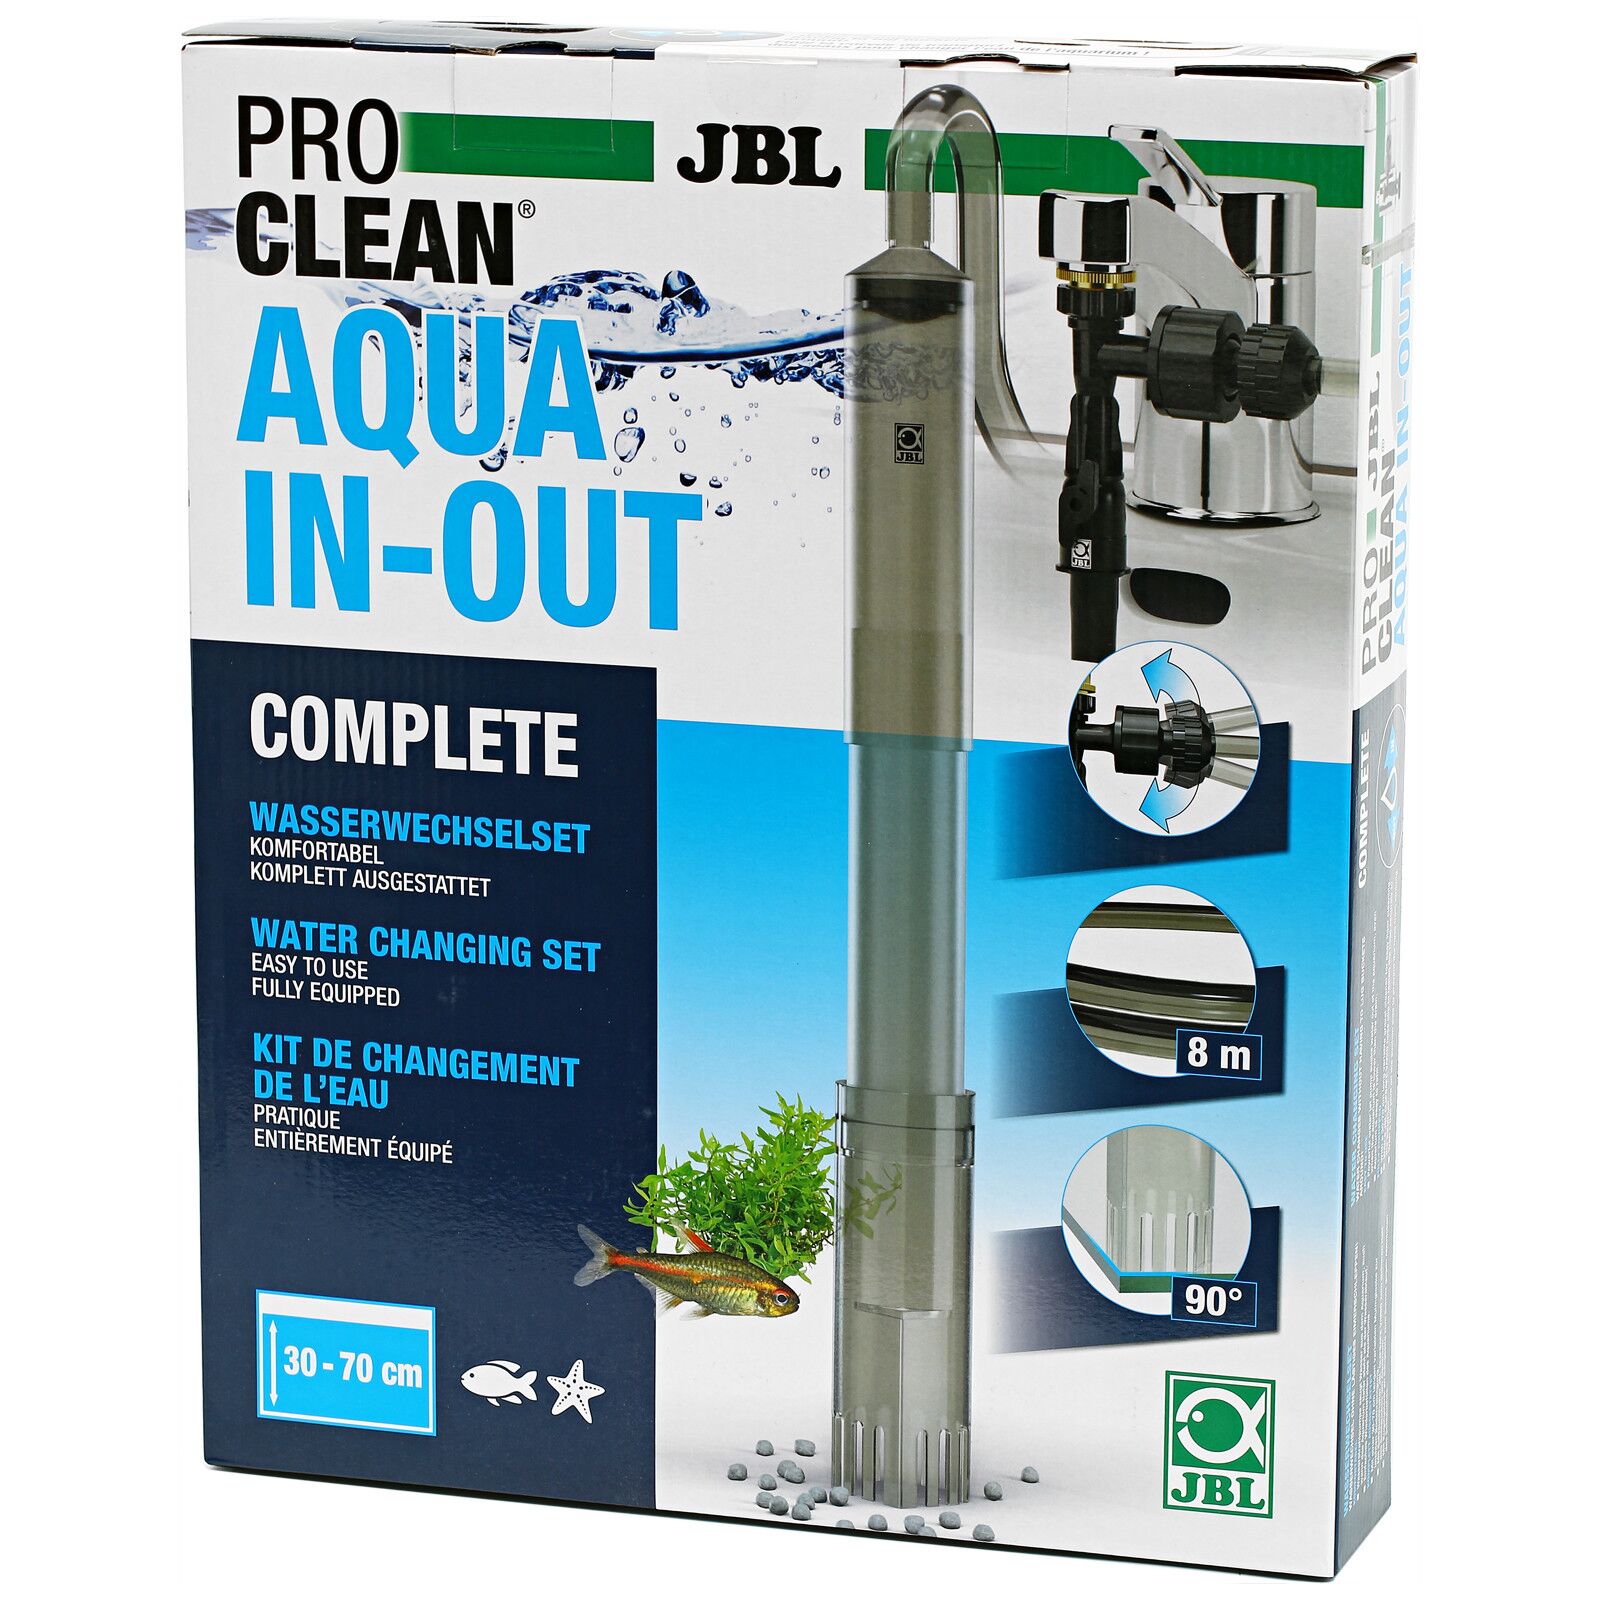 JBL AquaEx Set 10-35 Gravel Cleaner for Nano Aquarium –